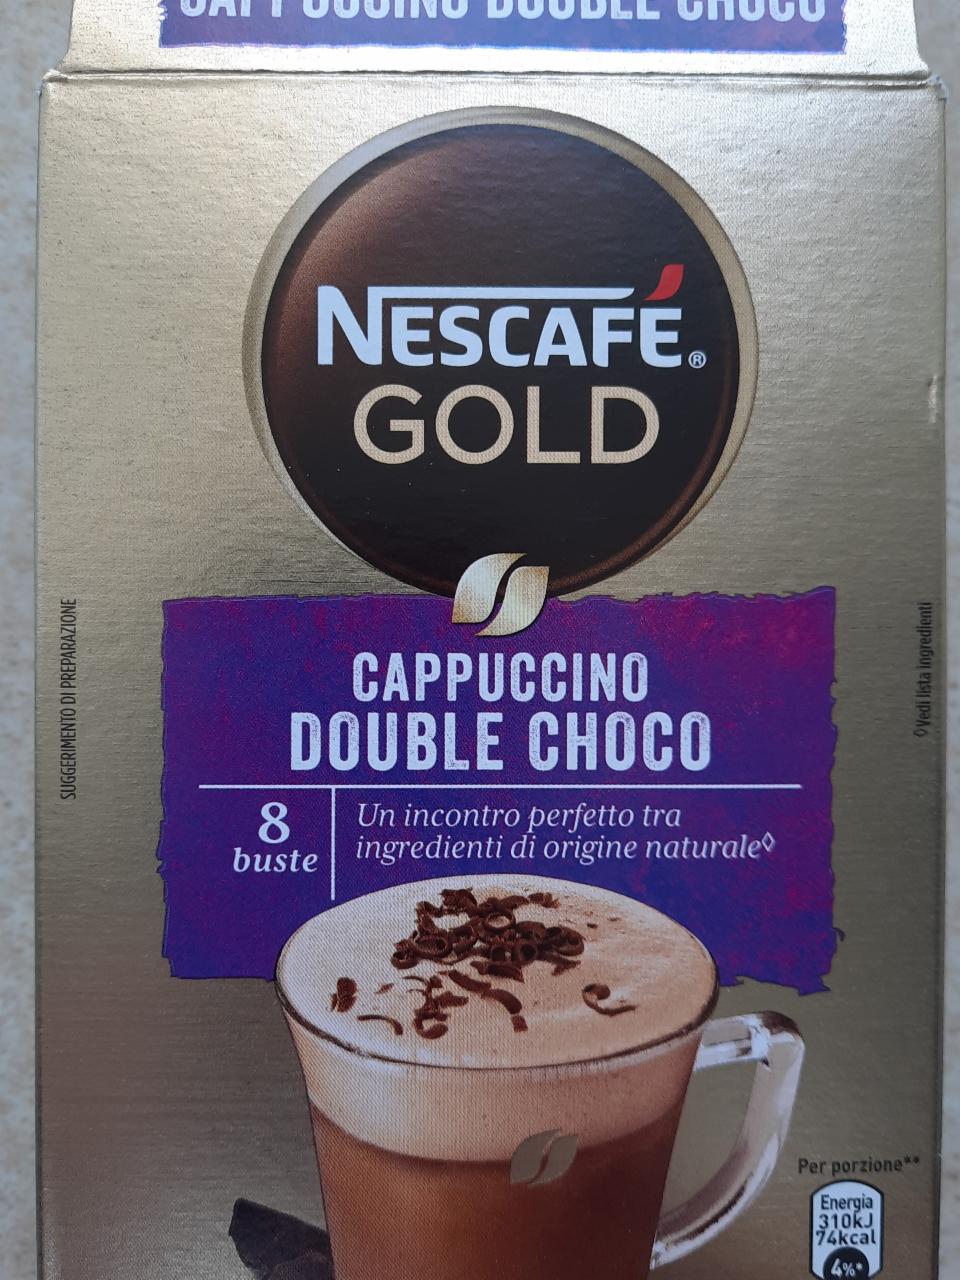 Фото - Сappuccino double choco Nescafé gold